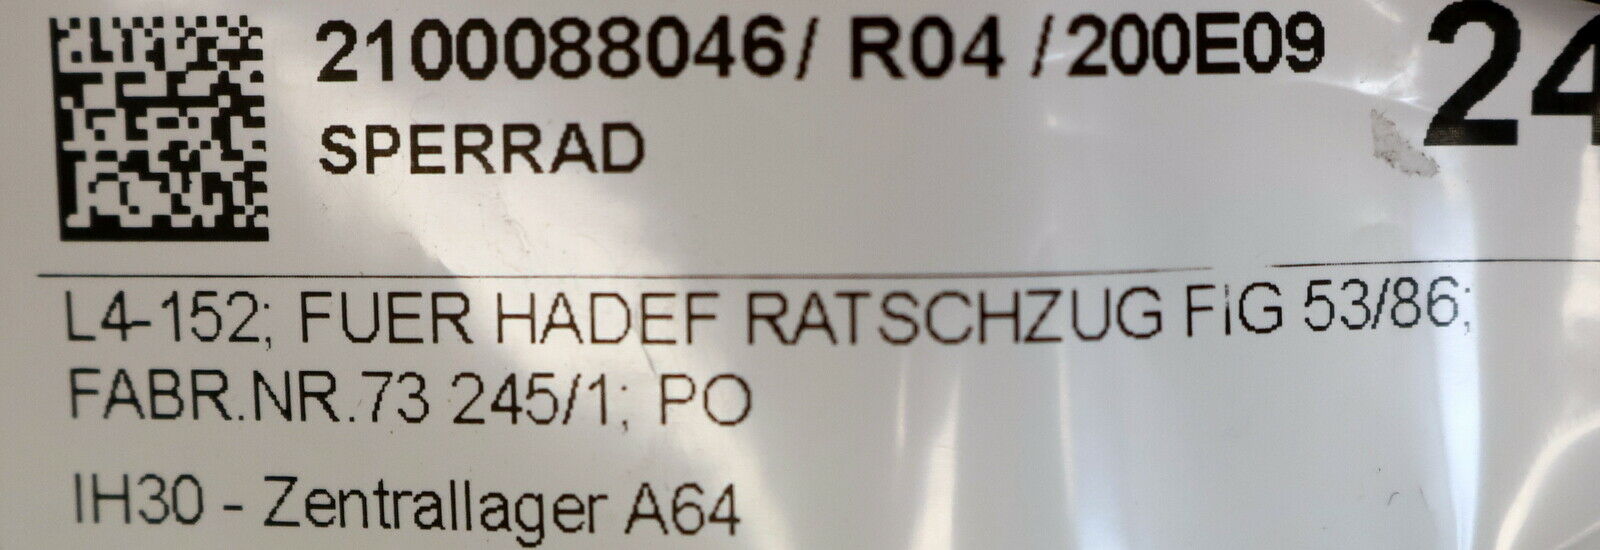 HADEF Sperrrad Art.Nr. 4 186 40 0133 für HADEF Ratschzug FIG 53/86 Nr. 73245/1